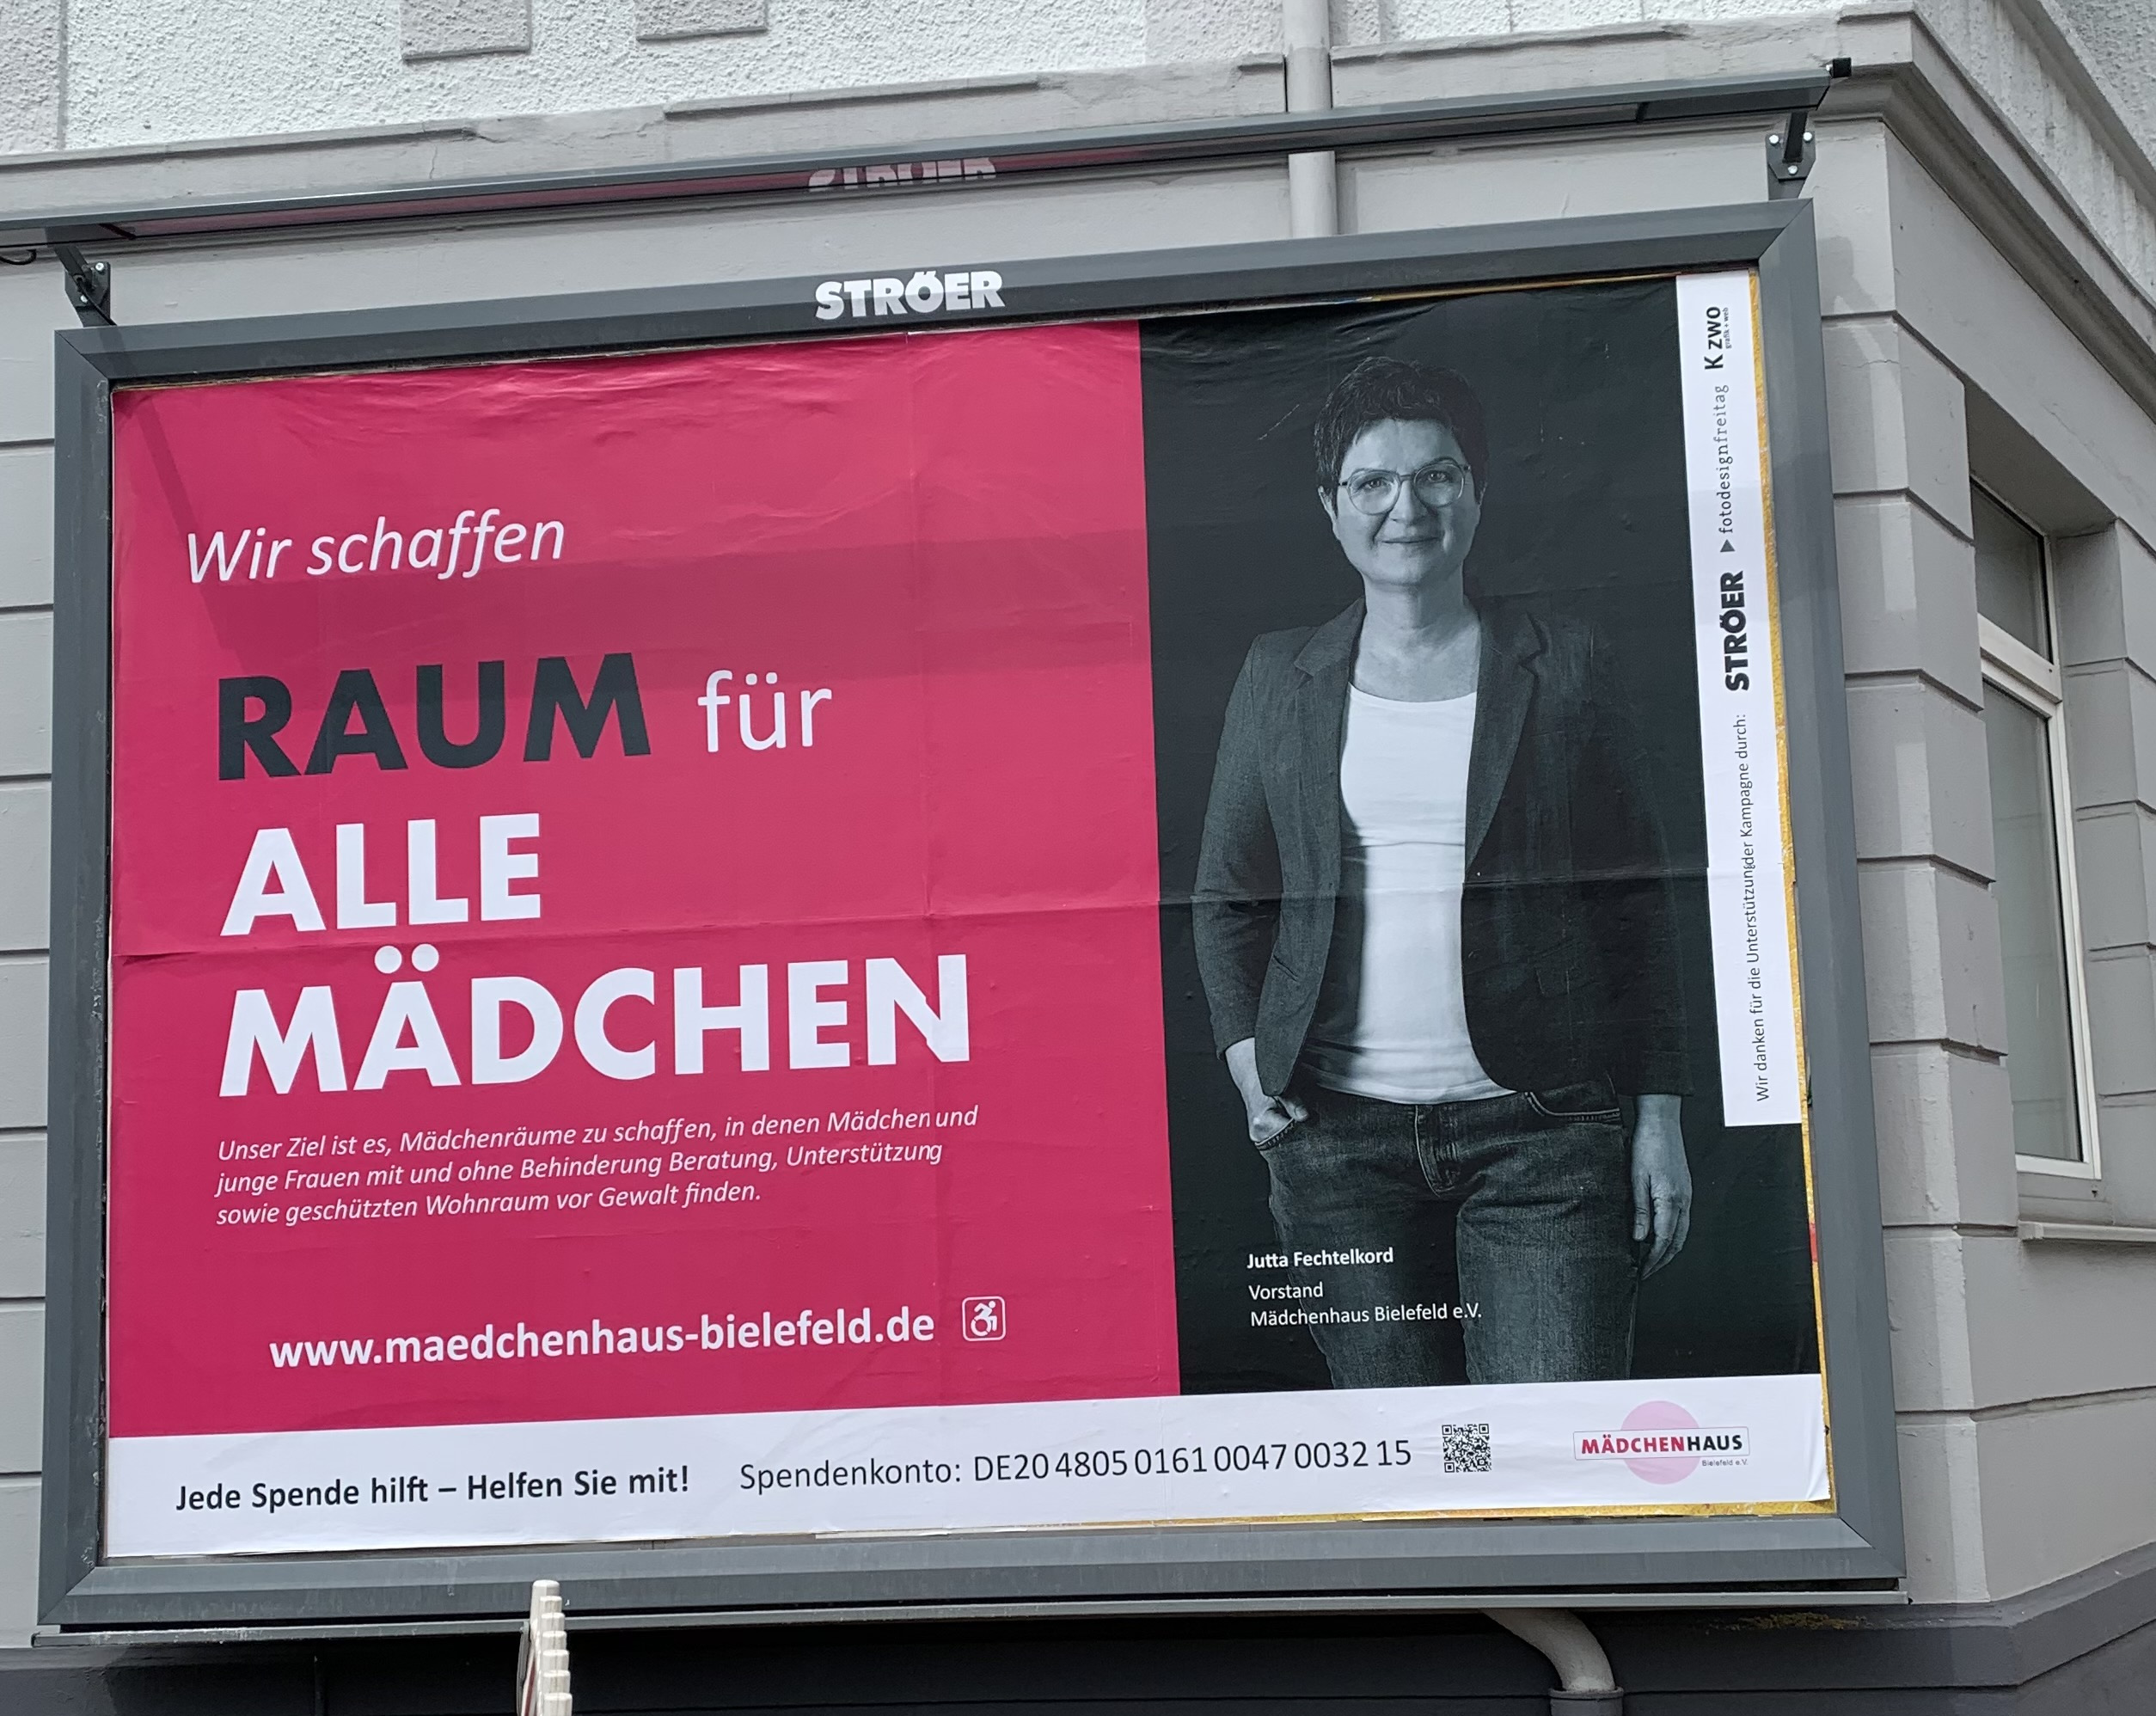 Mädchenhaus Bielefeld | Plakatkampagne | Wir schaffen Raum für alle Mädchen